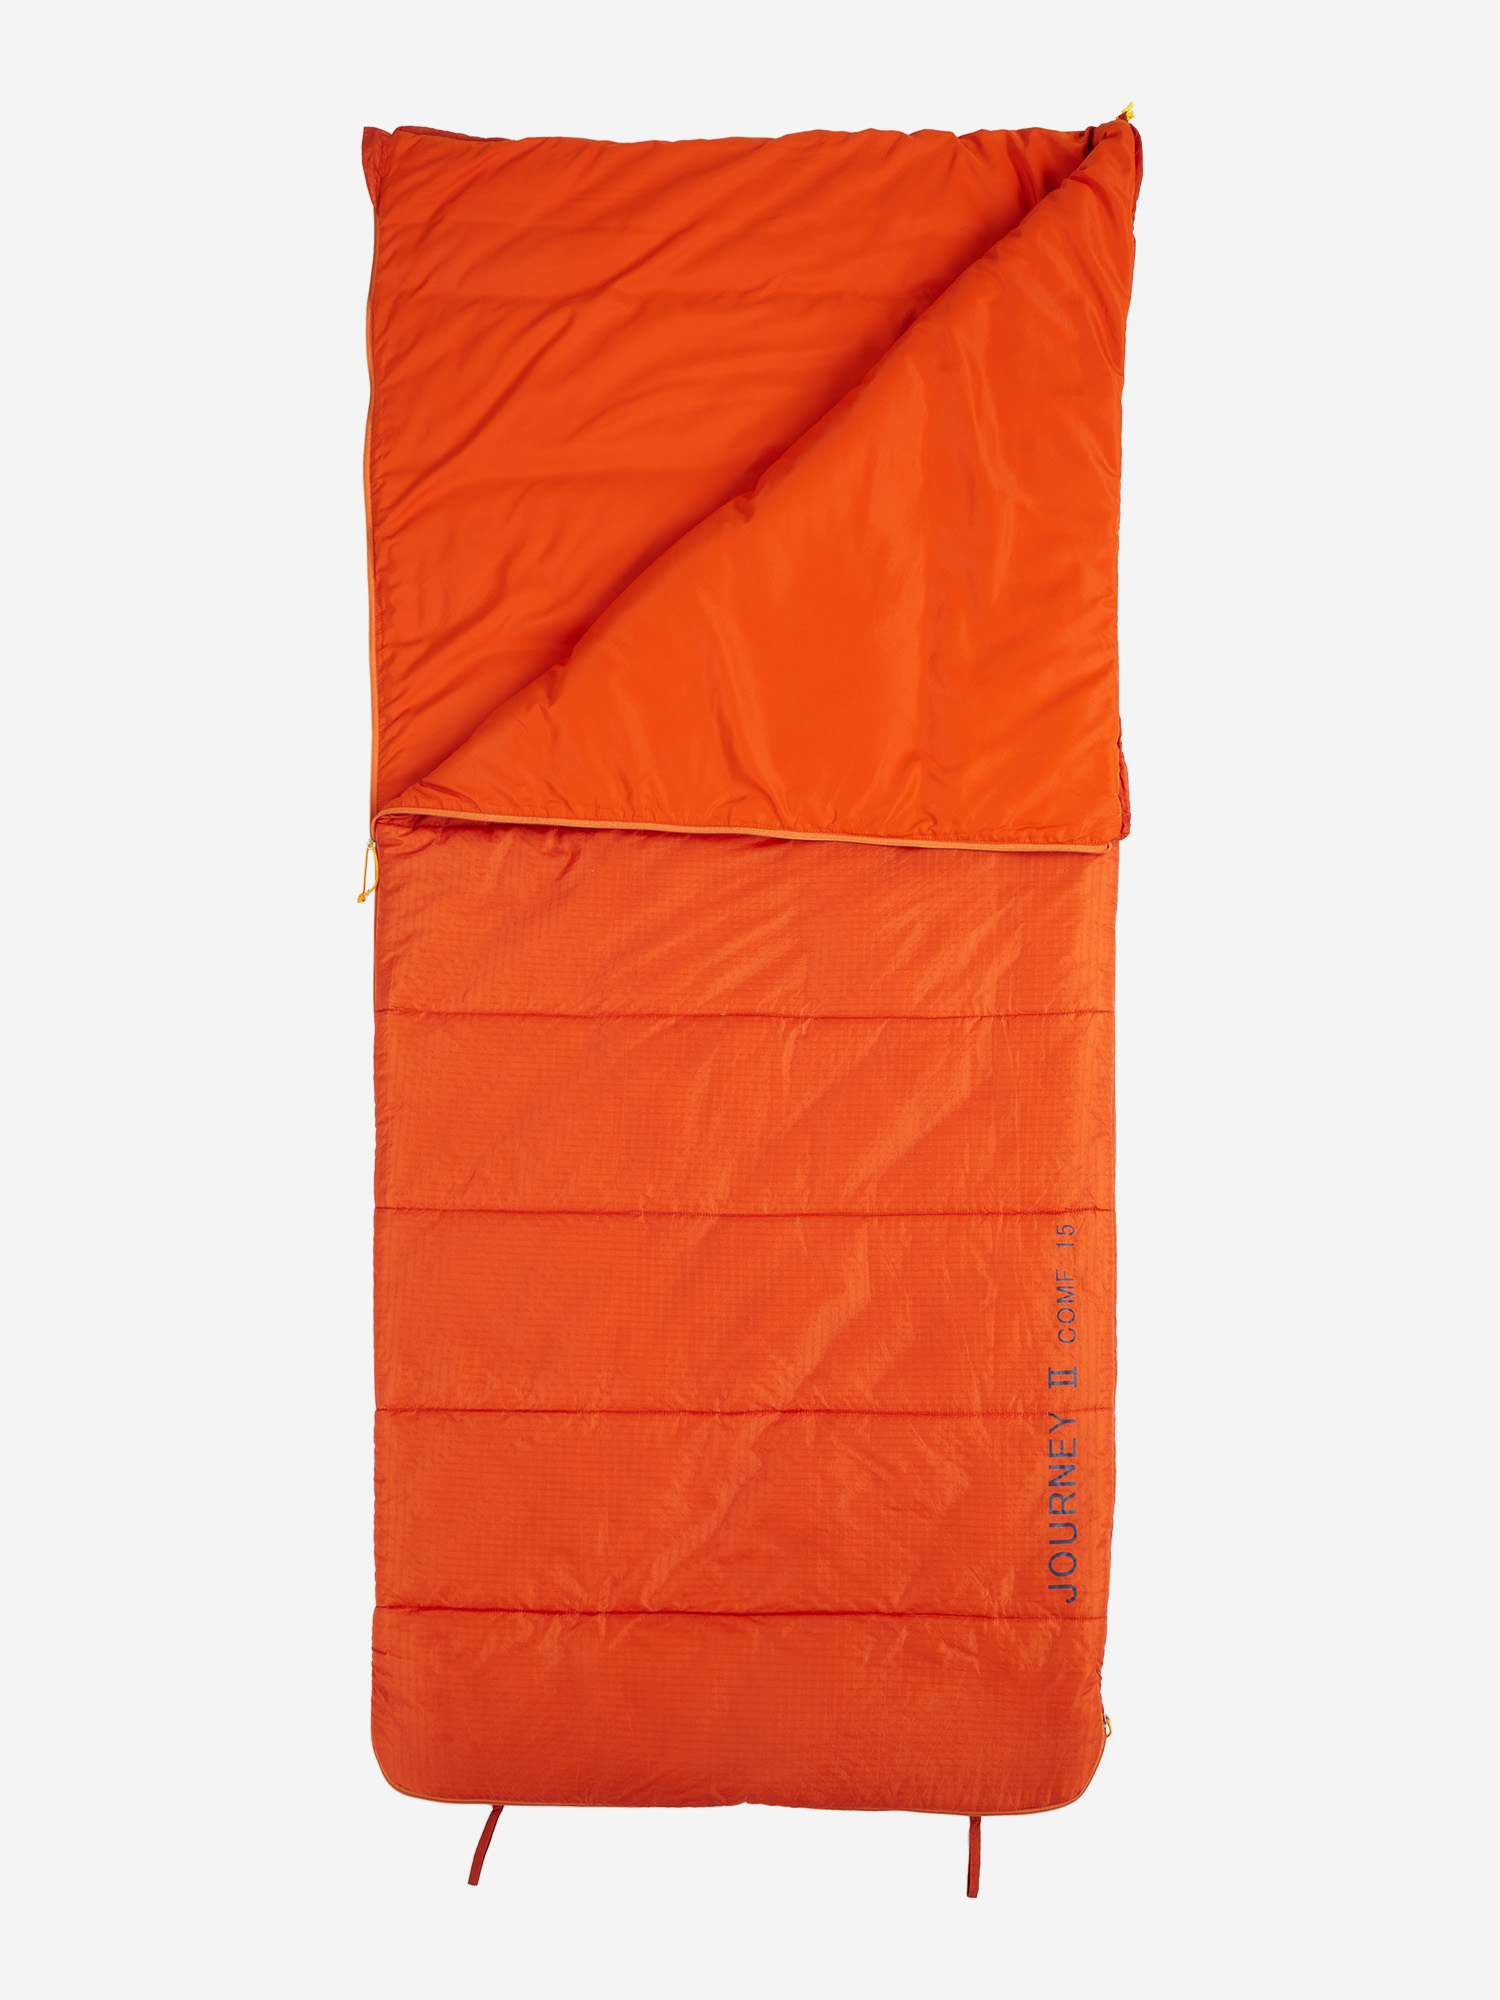 Спальный мешок Kailas Journey II +7, Оранжевый нарукавники и коврик мешок под колени оксфорд 240 оранжевый